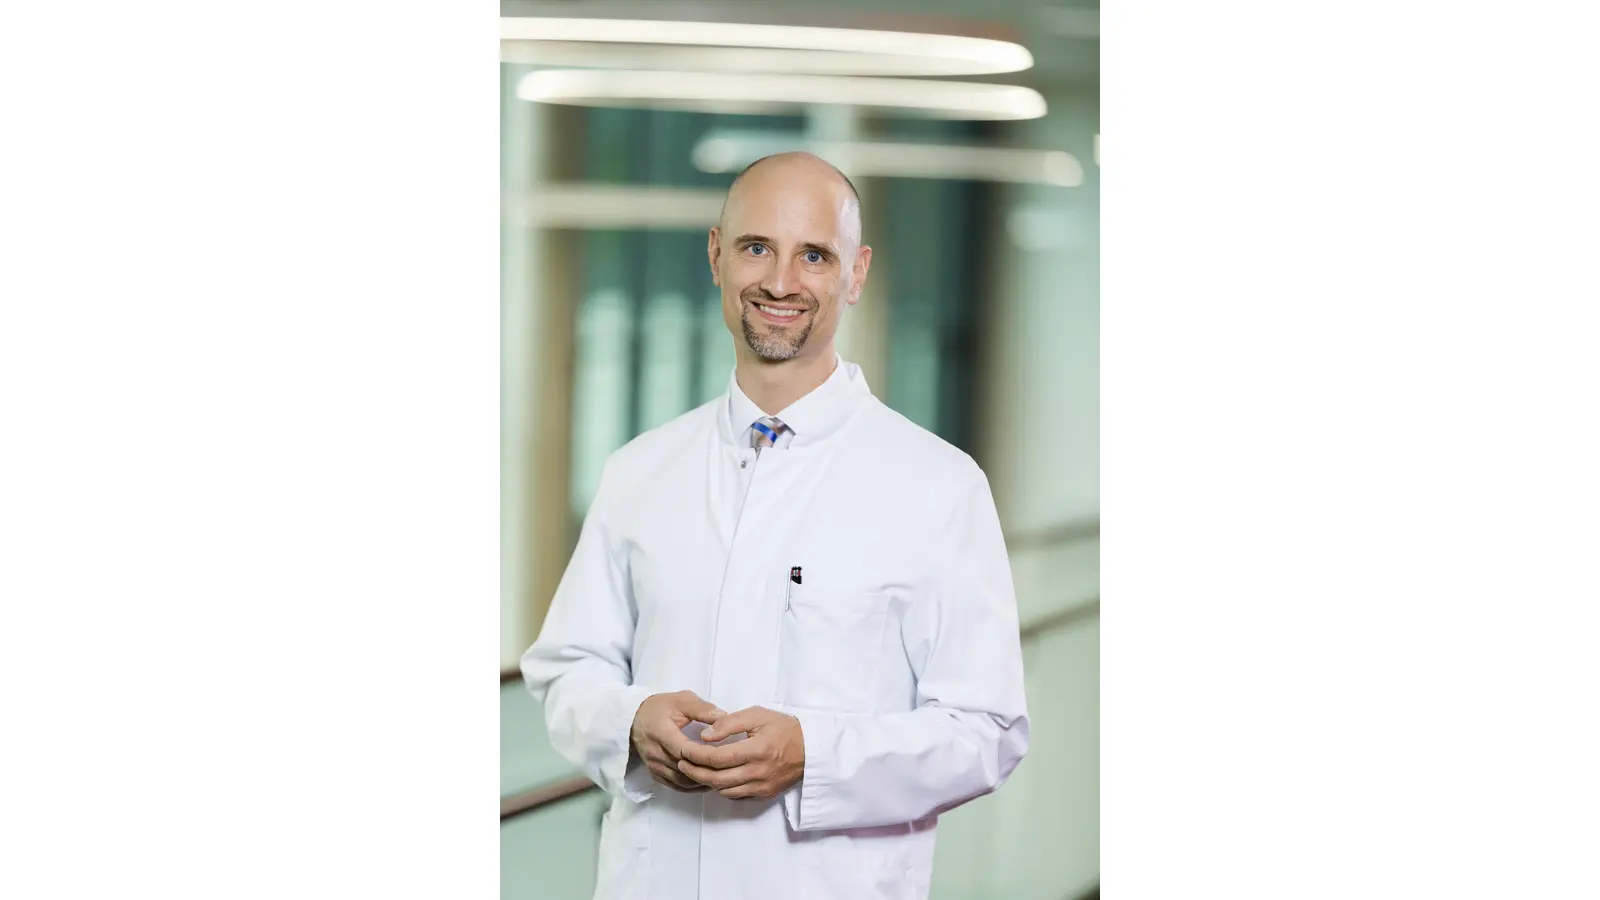 Chefarzt Professor Dr. Michael Jagodzinski, Chefarzt der Fachabteilung für Orthopädie und Unfallchirurgie. (Foto: privat)